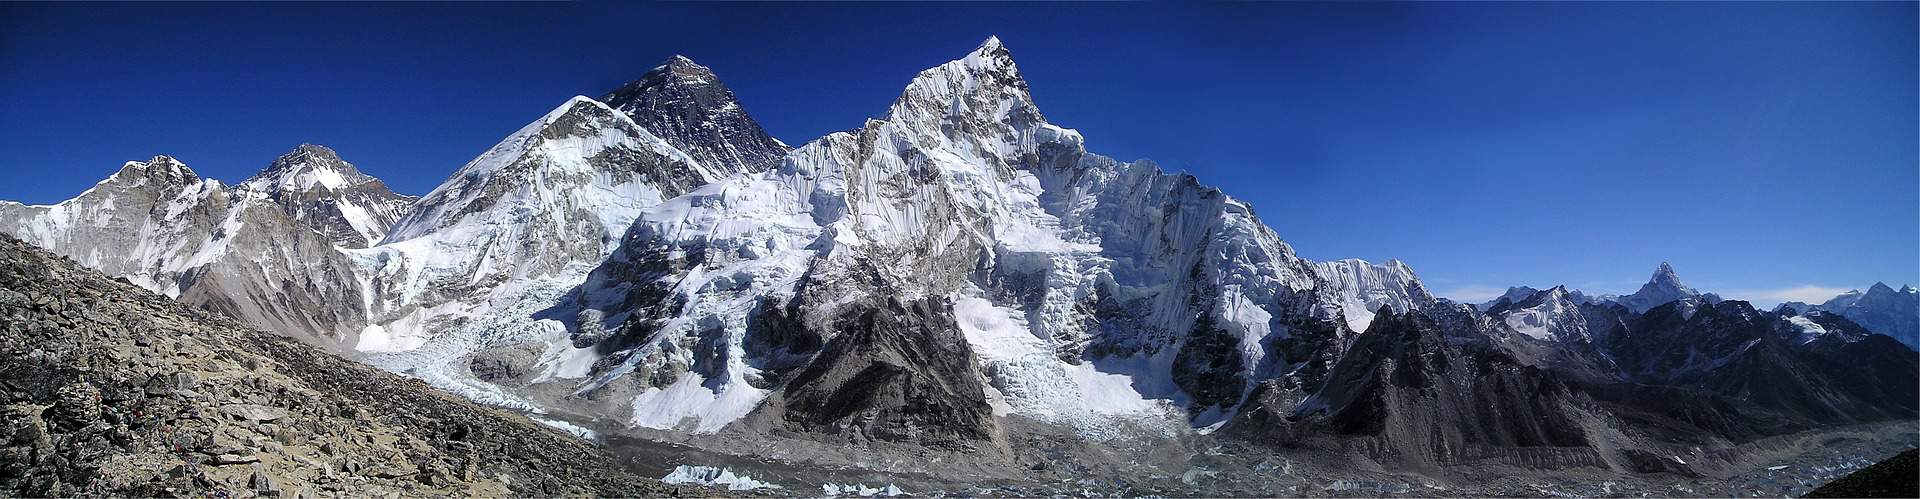 Himalaya Mount Everest mountain summit